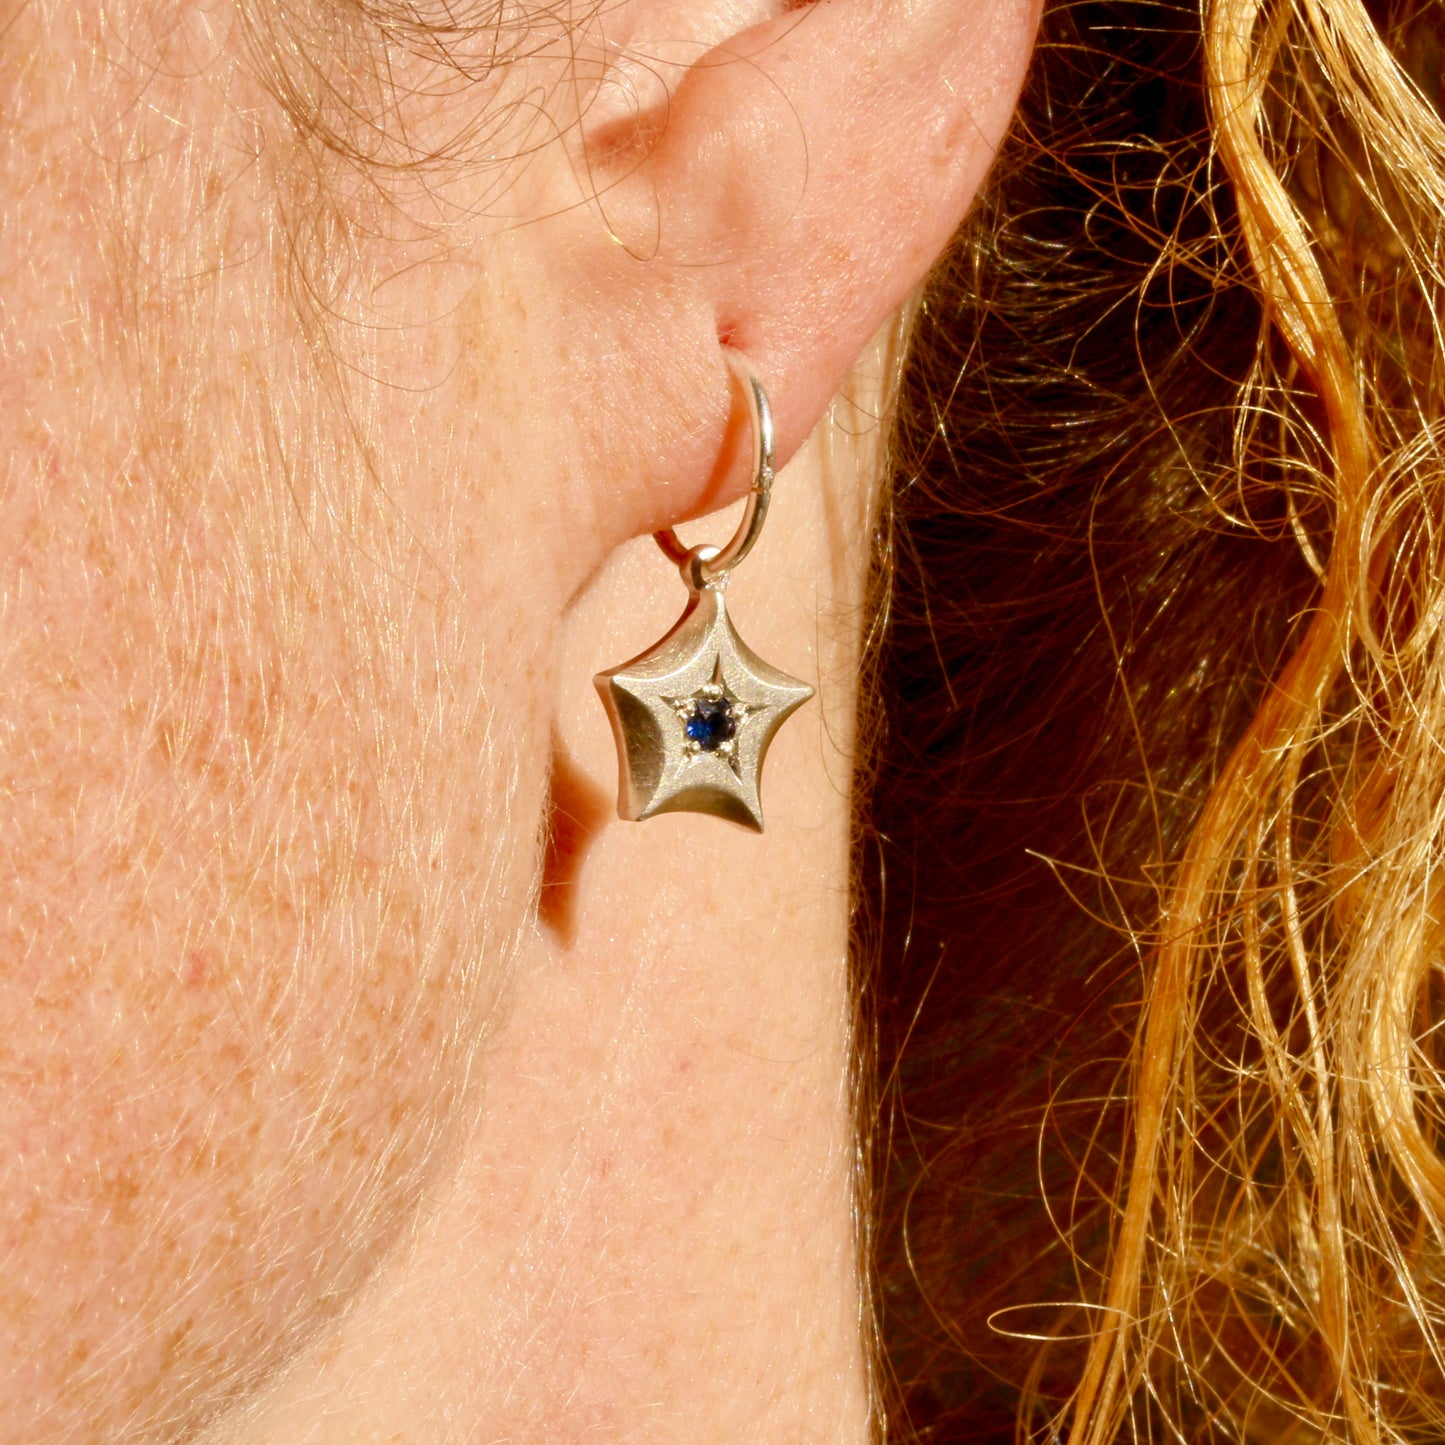 Wishing star earrings